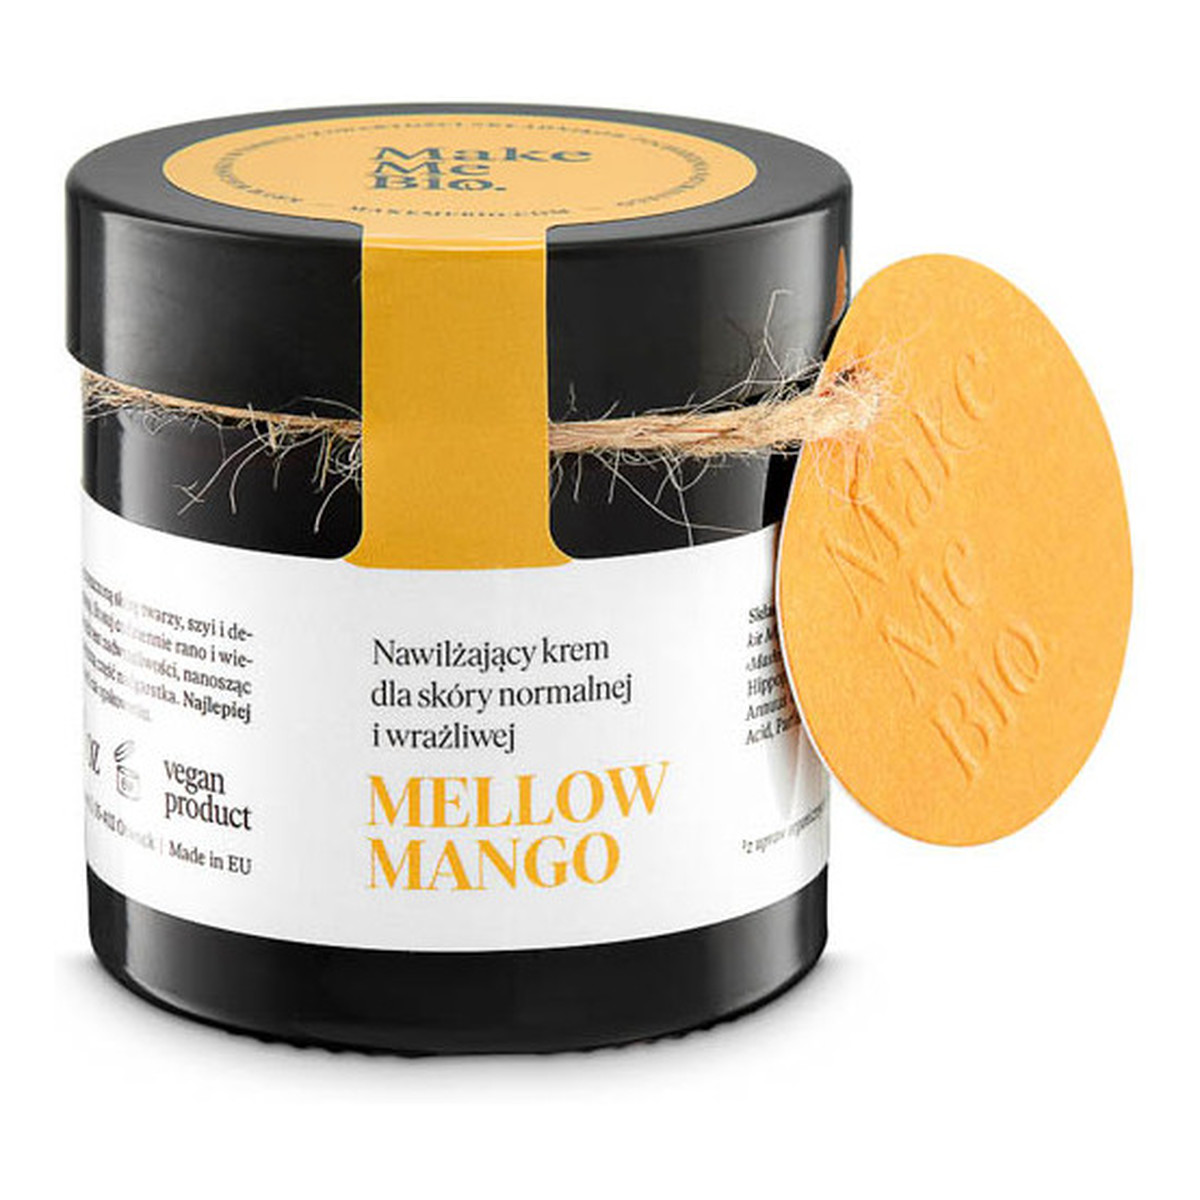 Make Me Bio Mellow Mango Nawilżający krem dla skóry normalnej i wrażliwej 60ml